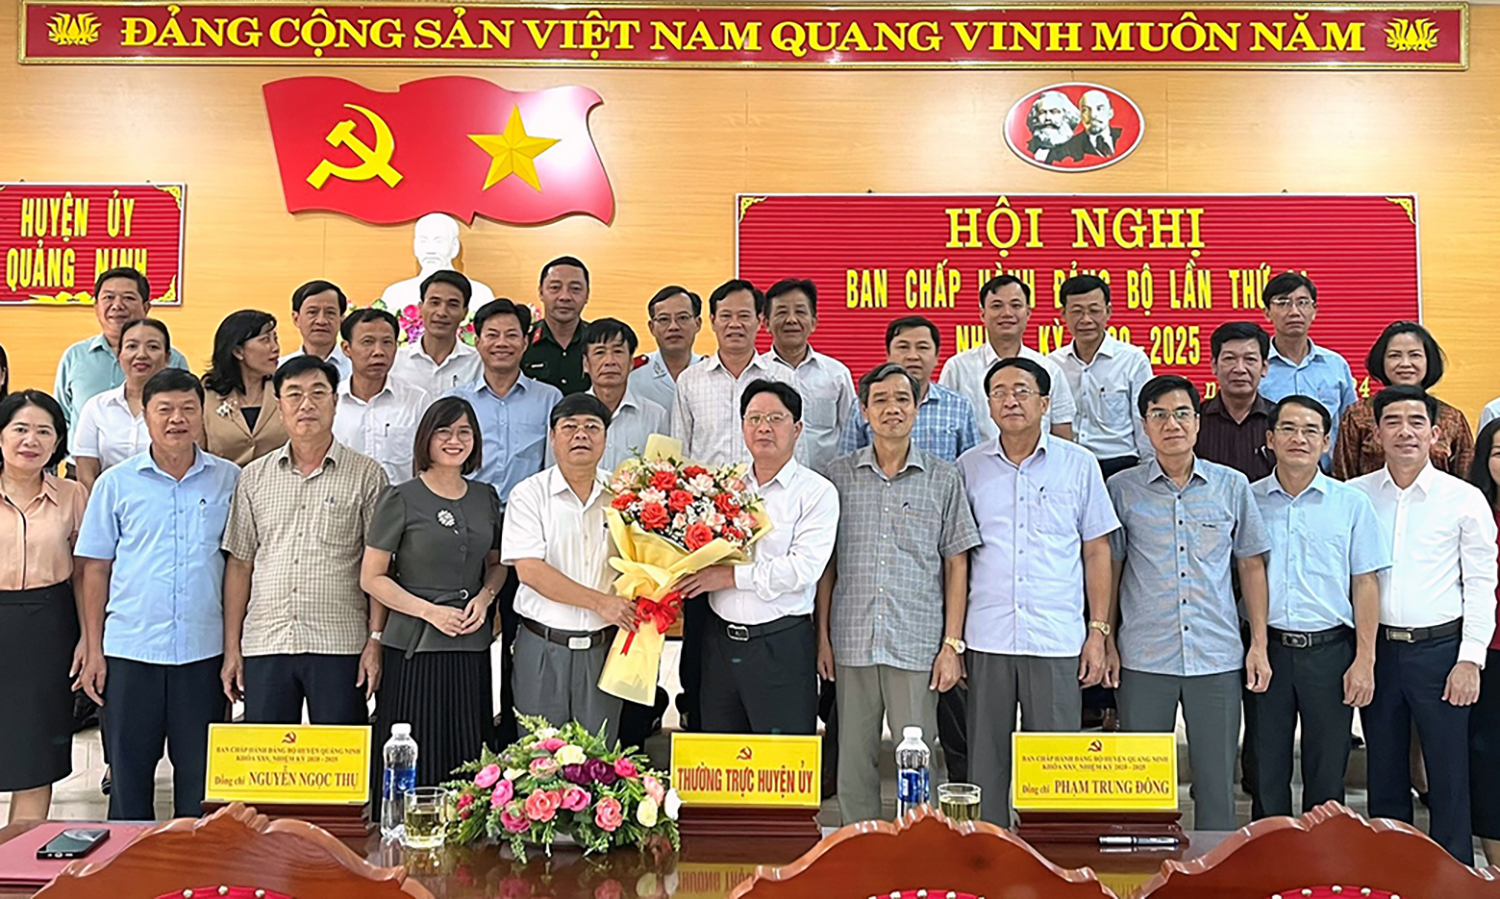 Đồng chí Phạm Trung Đông được bầu giữ chức vụ Bí thư Huyện ủy Quảng Ninh